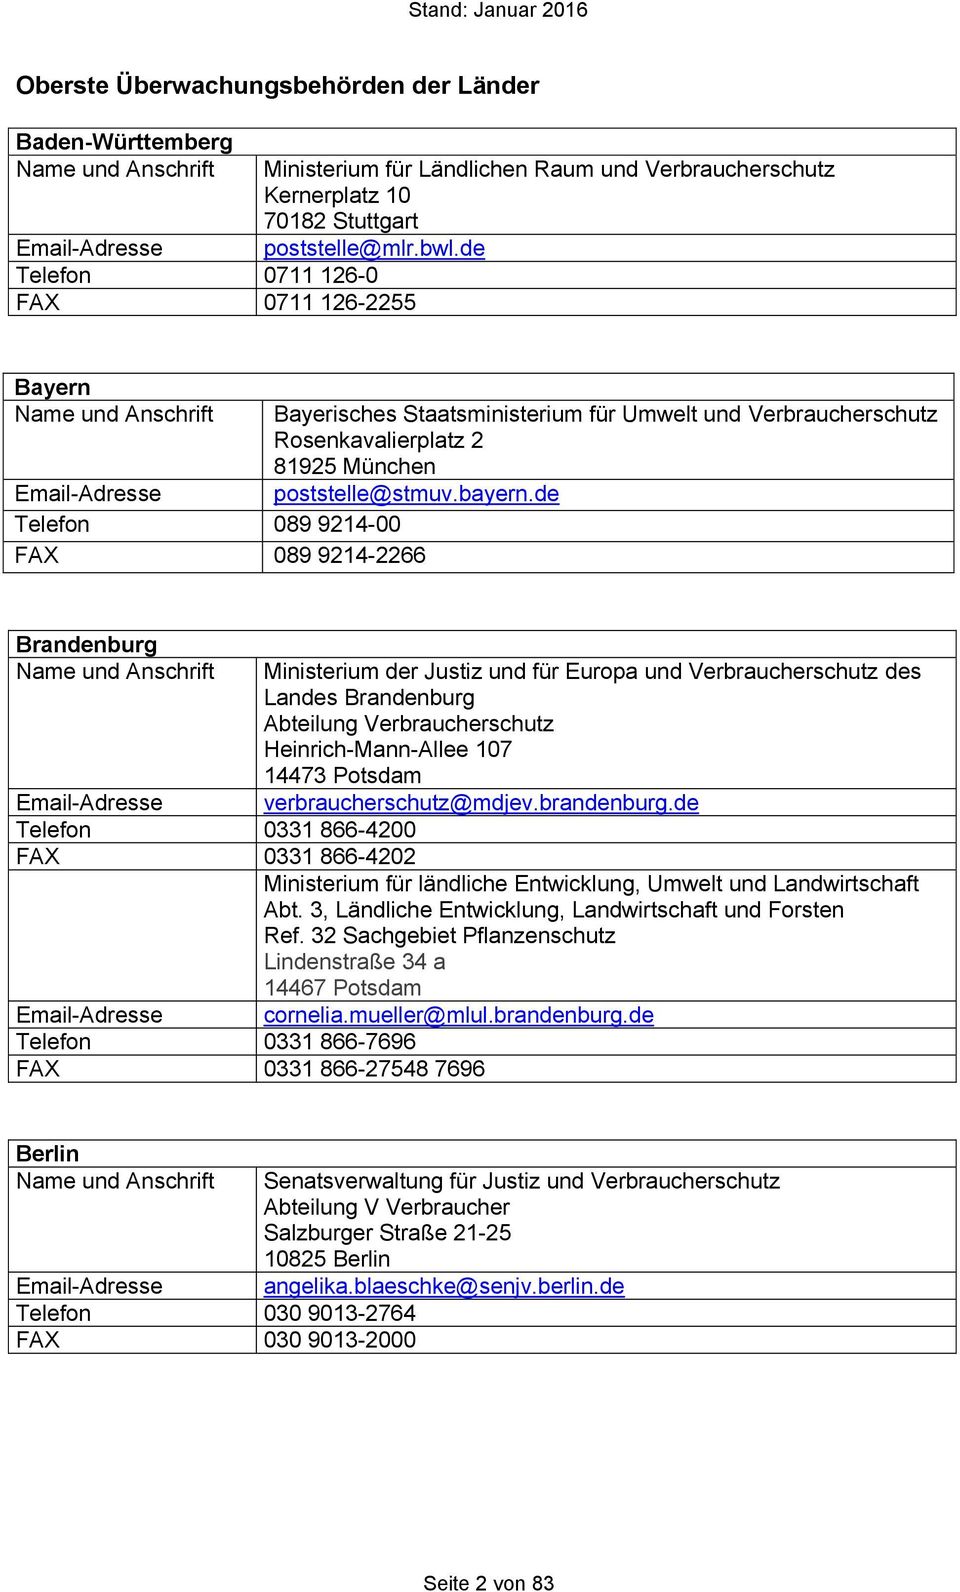 de Bayern Name und Anschrift Email-Adresse Telefon 089 9214-00 FAX 089 9214-2266 Bayerisches Staatsministerium für Umwelt und Verbraucherschutz Rosenkavalierplatz 2 81925 München poststelle@stmuv.